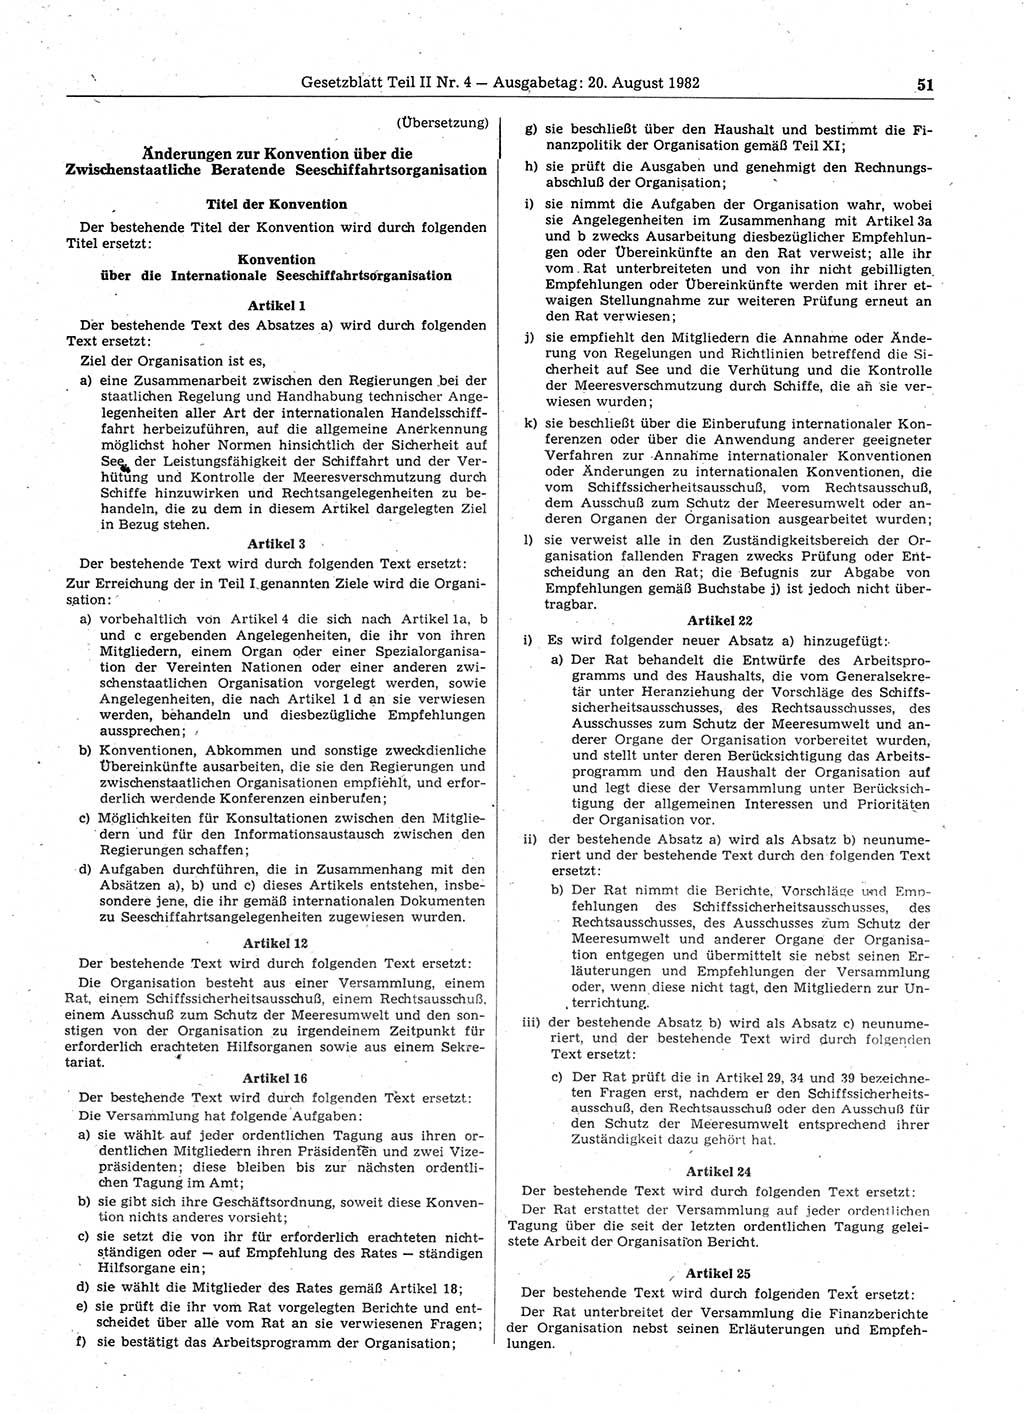 Gesetzblatt (GBl.) der Deutschen Demokratischen Republik (DDR) Teil ⅠⅠ 1982, Seite 51 (GBl. DDR ⅠⅠ 1982, S. 51)